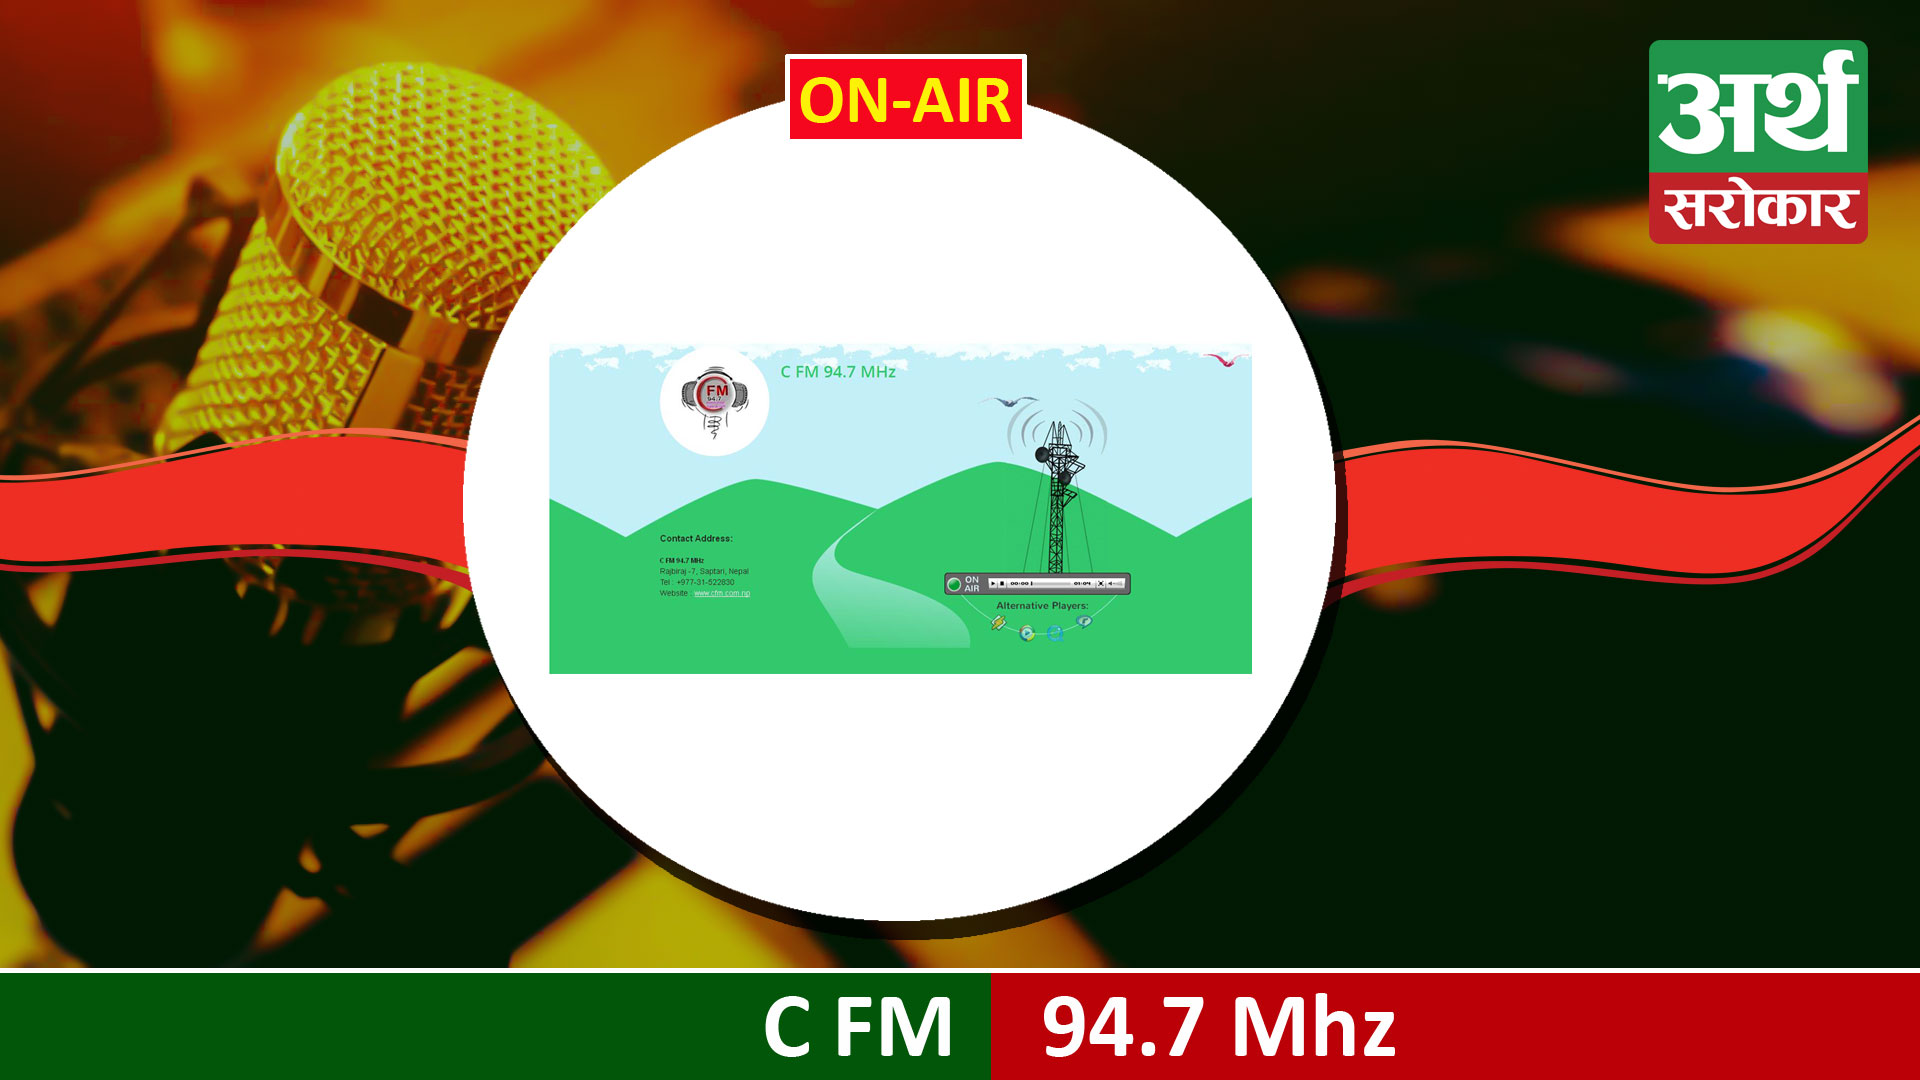 C FM 94.7 MHz